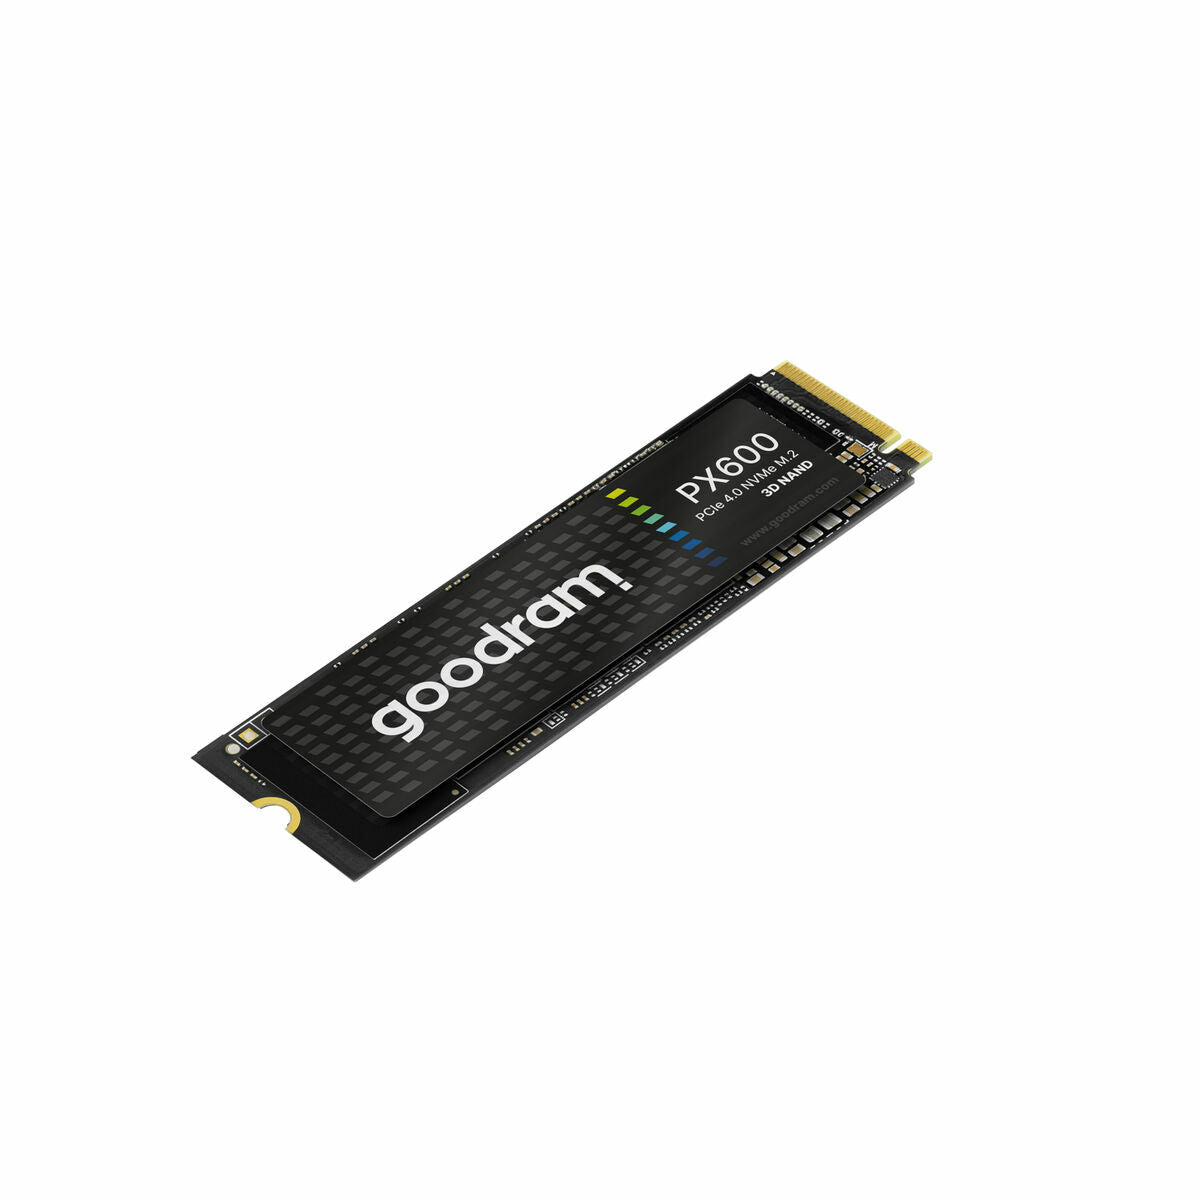 Hard Drive GoodRam PX600 500 GB SSD-3